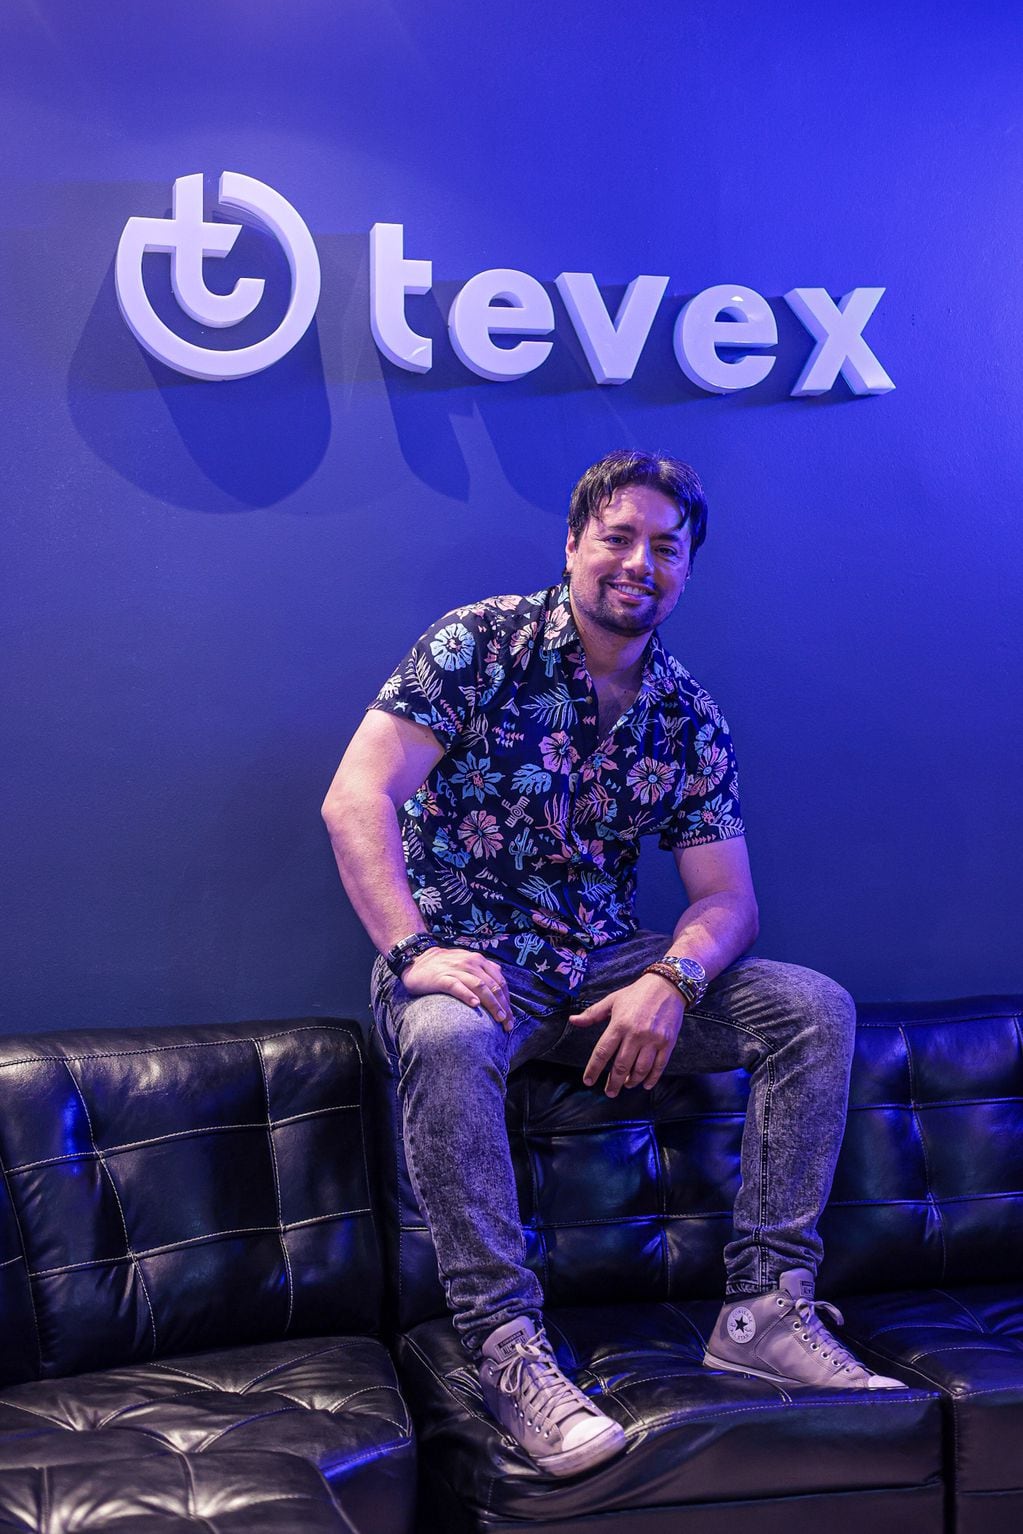 Hoy el animador se encuentra en Tevex, donde finalmente se animó a regresar a la TV. 

Foto: Luis Sevilla